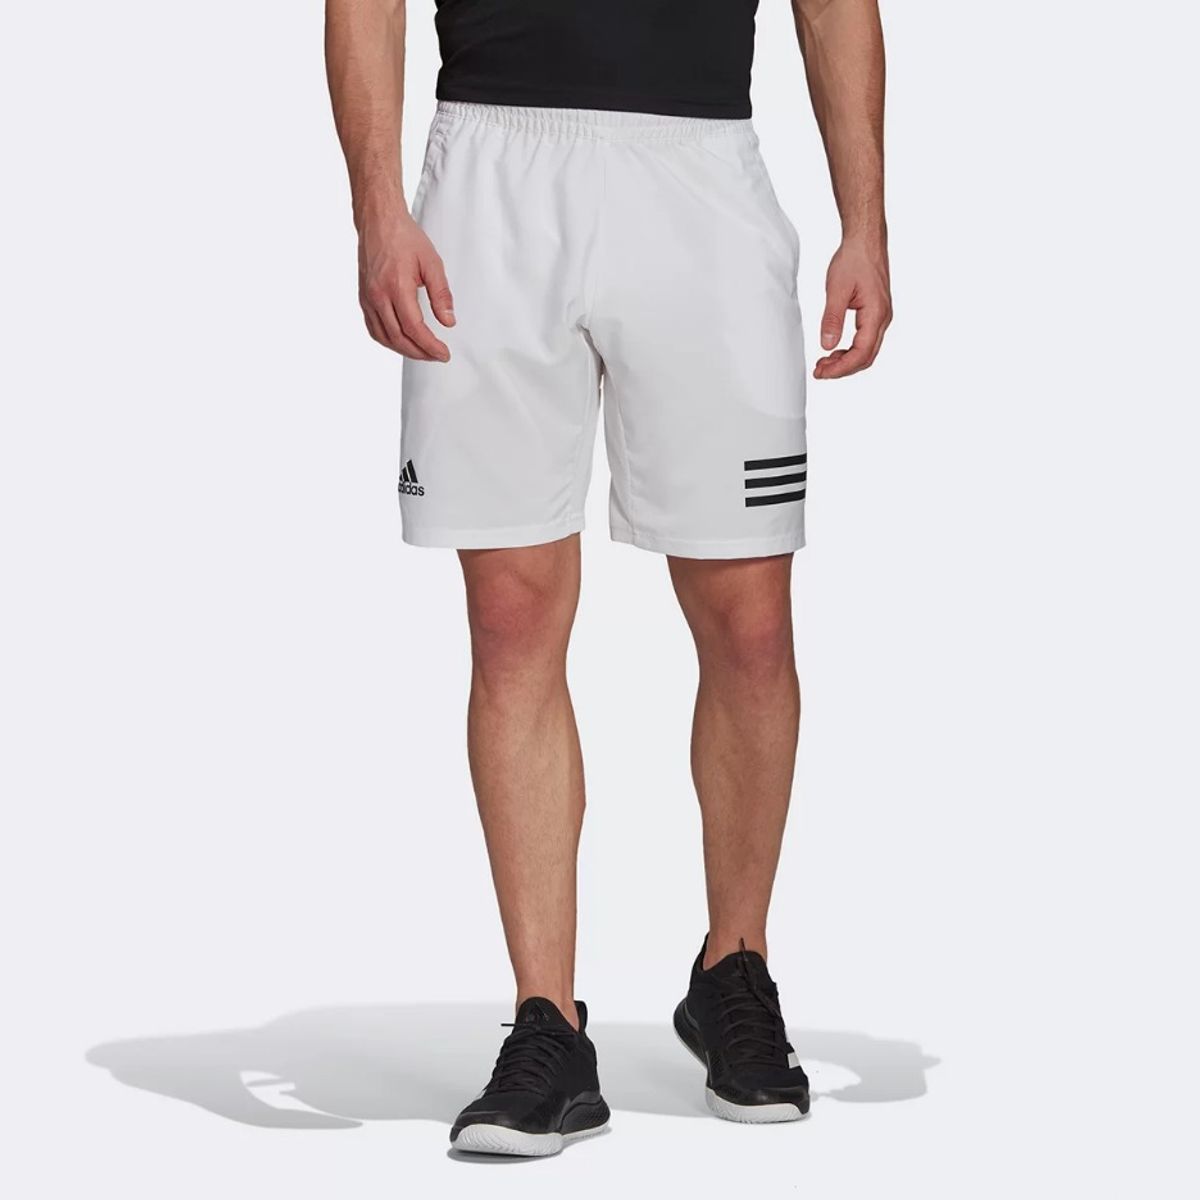 Bermuda Adidas 3S Masculina - Preto+Branco